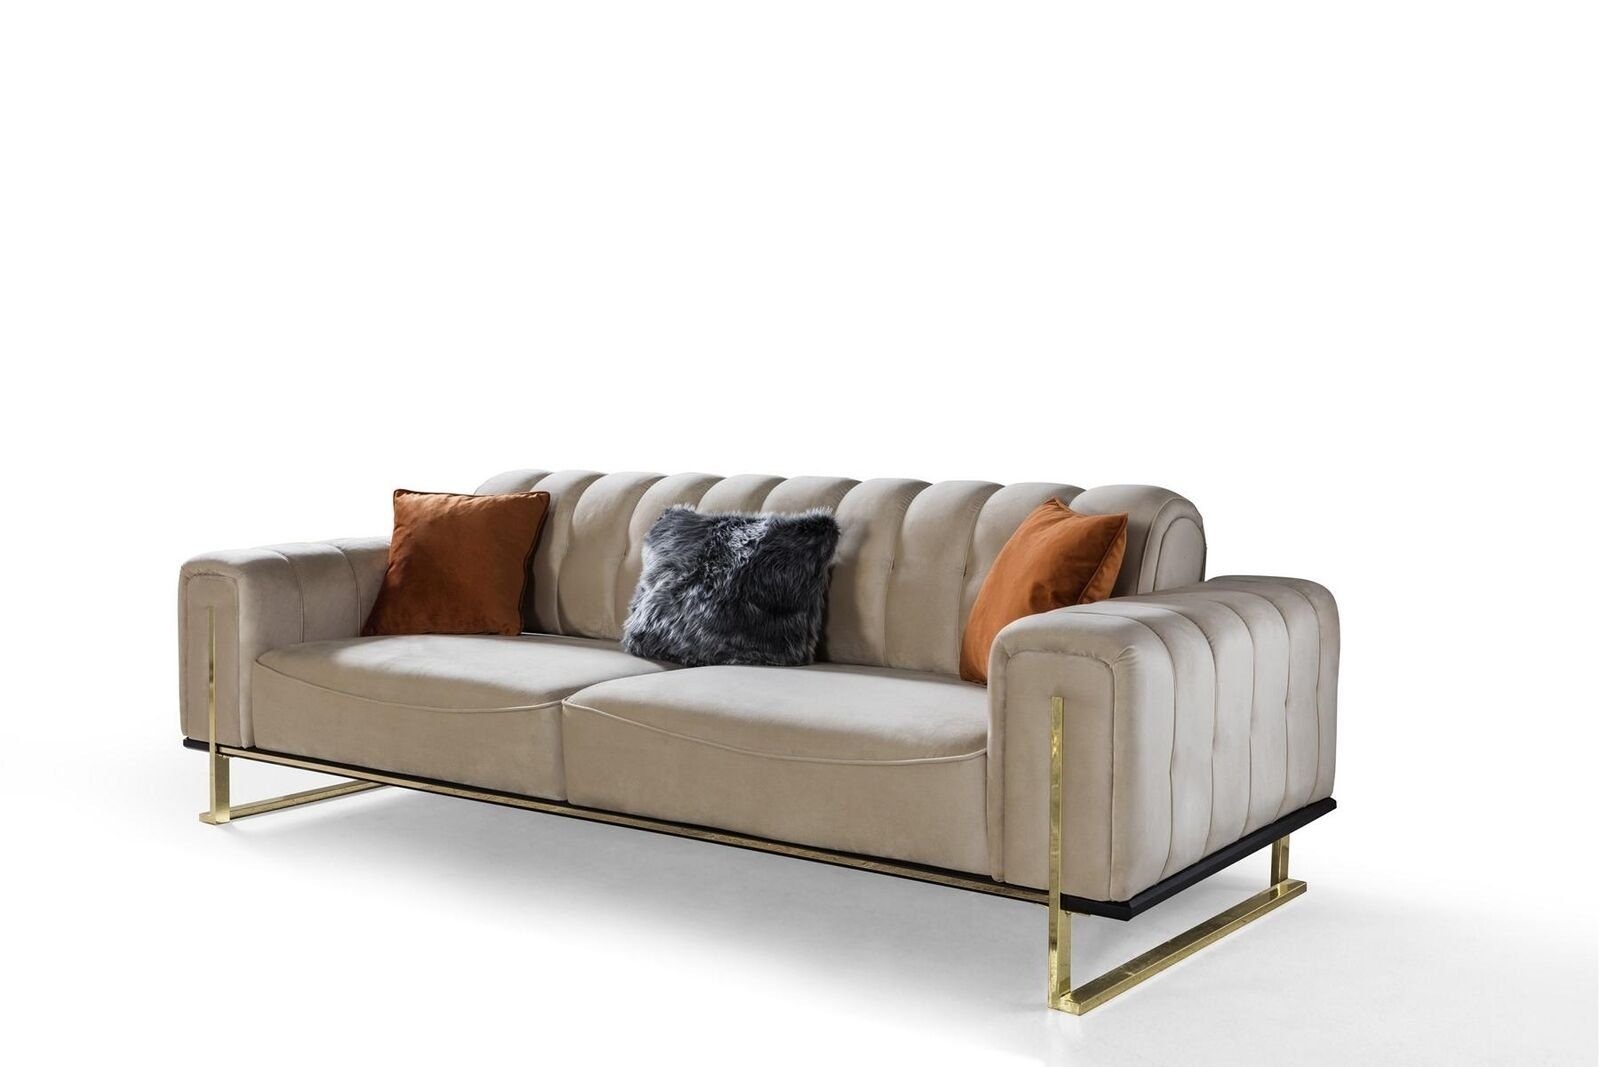 JVmoebel 3-Sitzer Sofa 3 Sitzer Modern Europa Wohnzimmer Made 1 Möbel Luxus in Beige Couchen, Farbe Teile